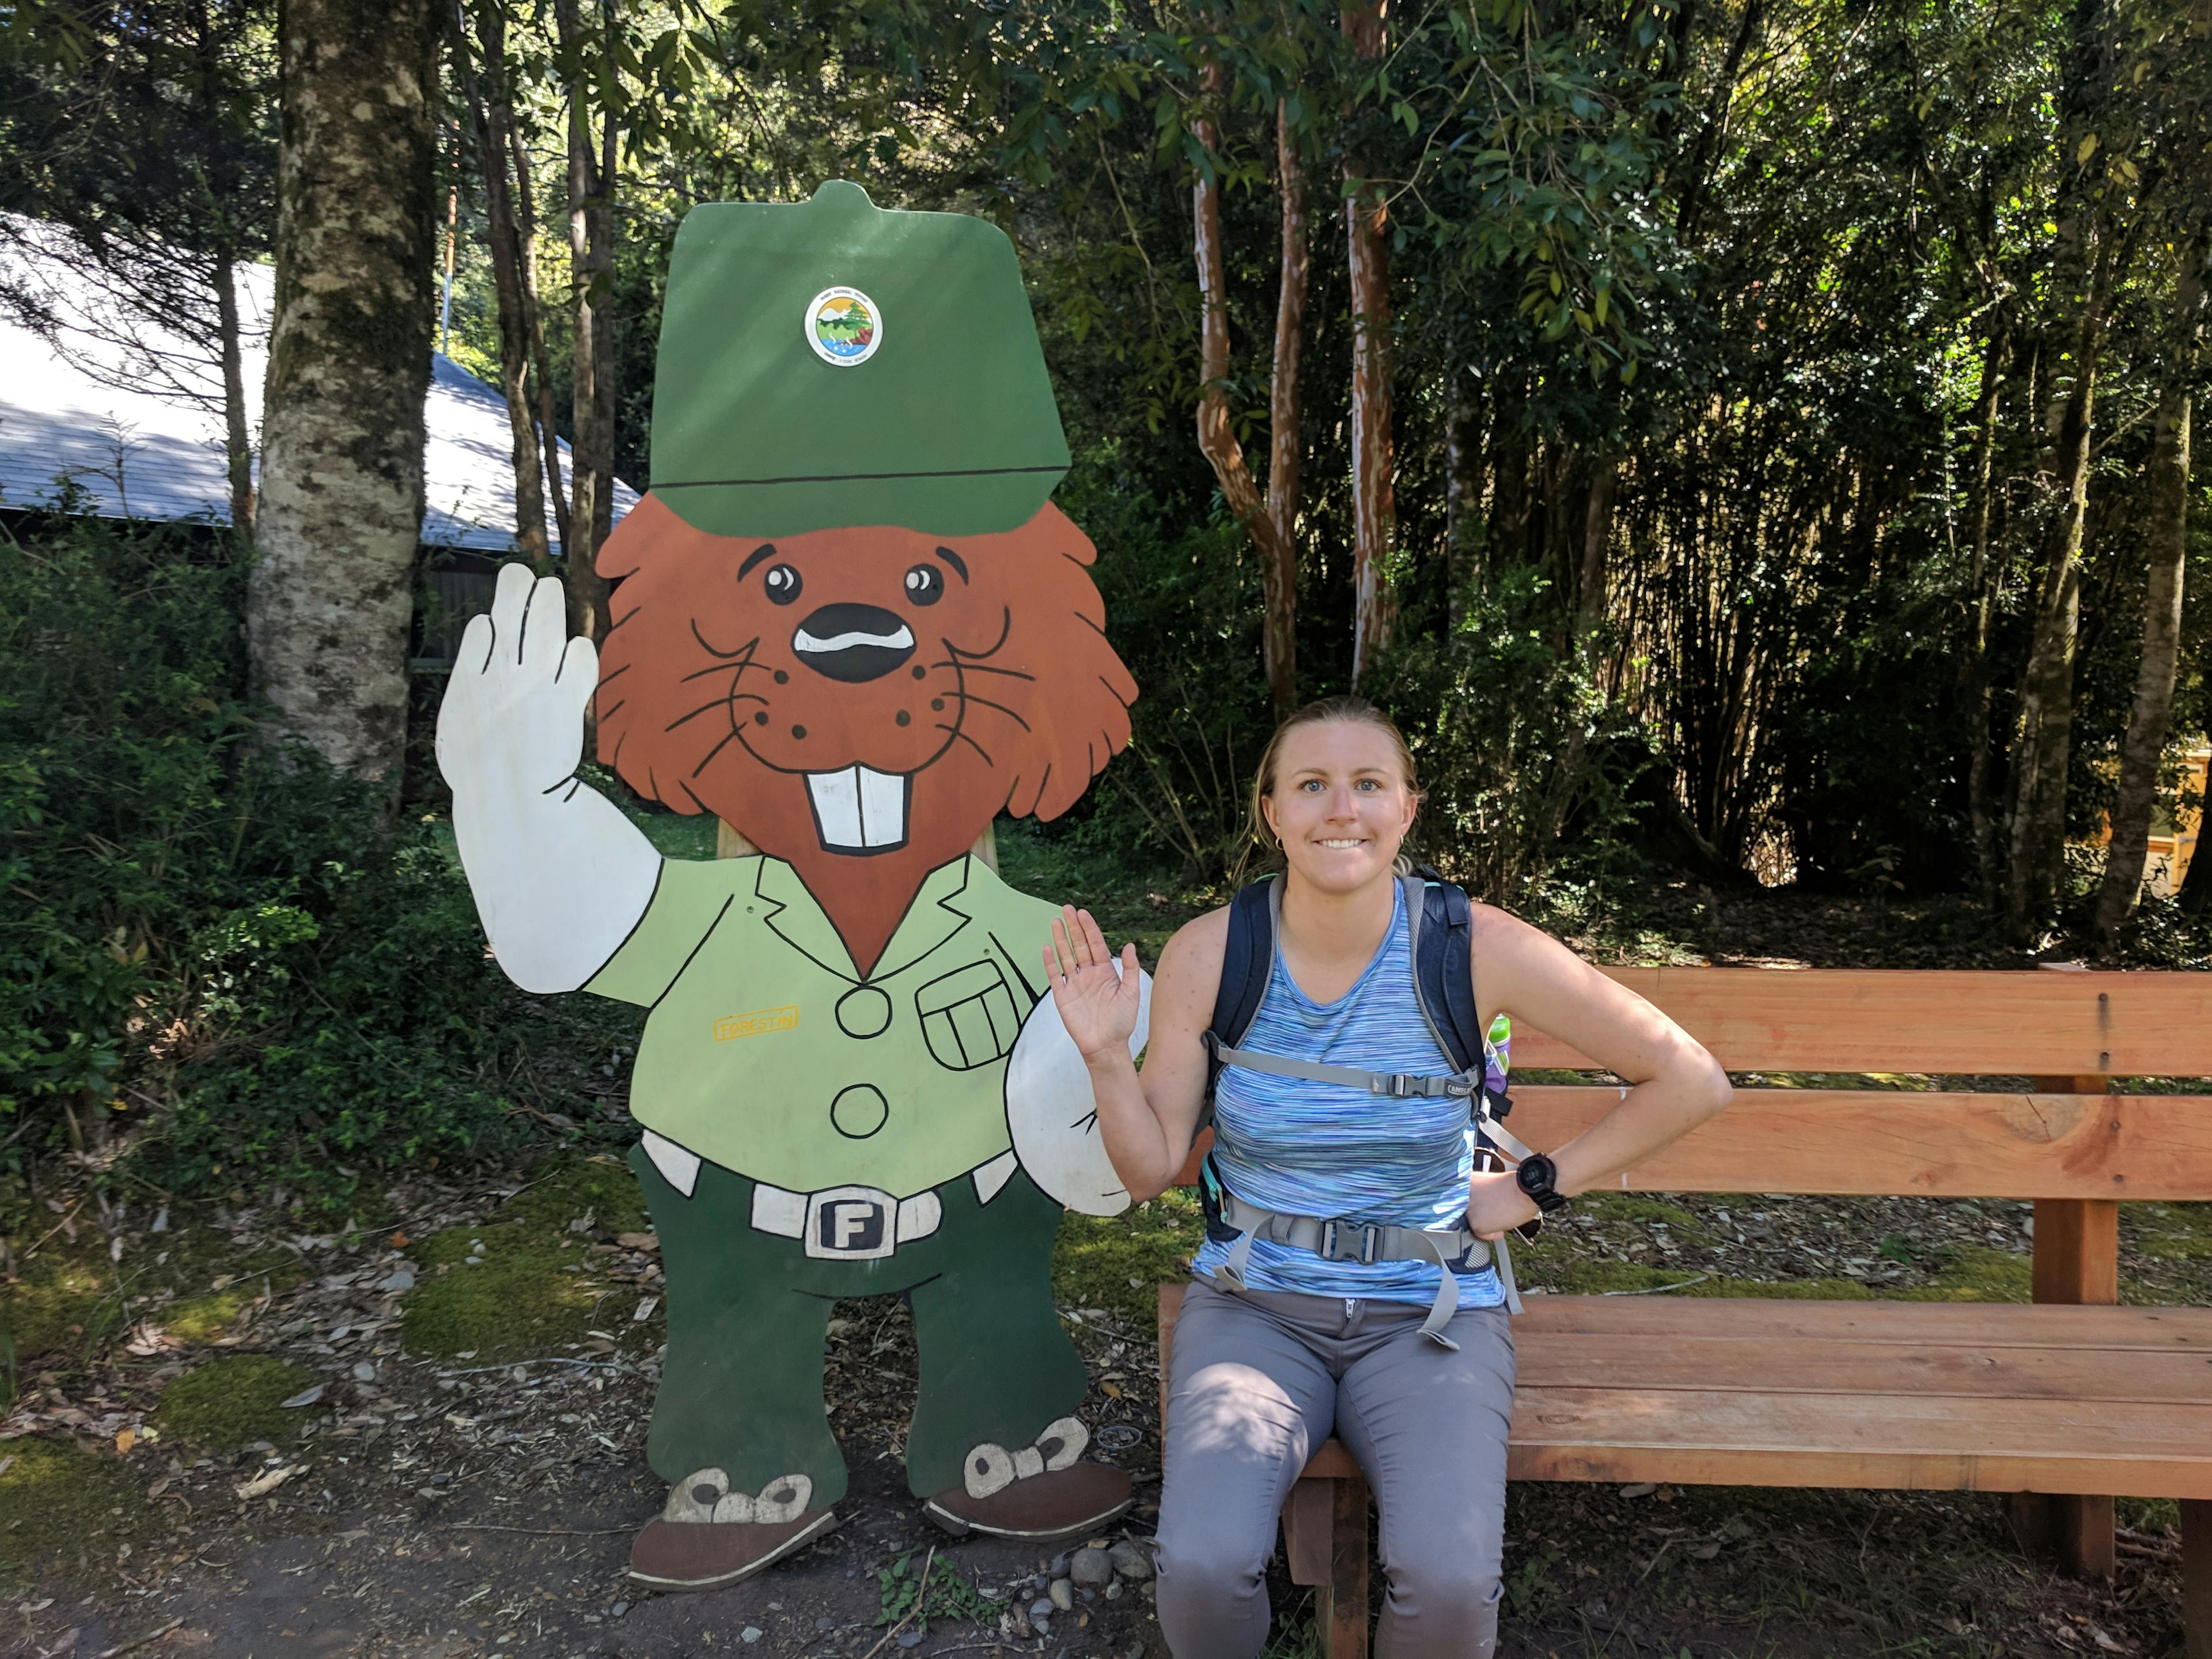 Lauren posing as the park mascot